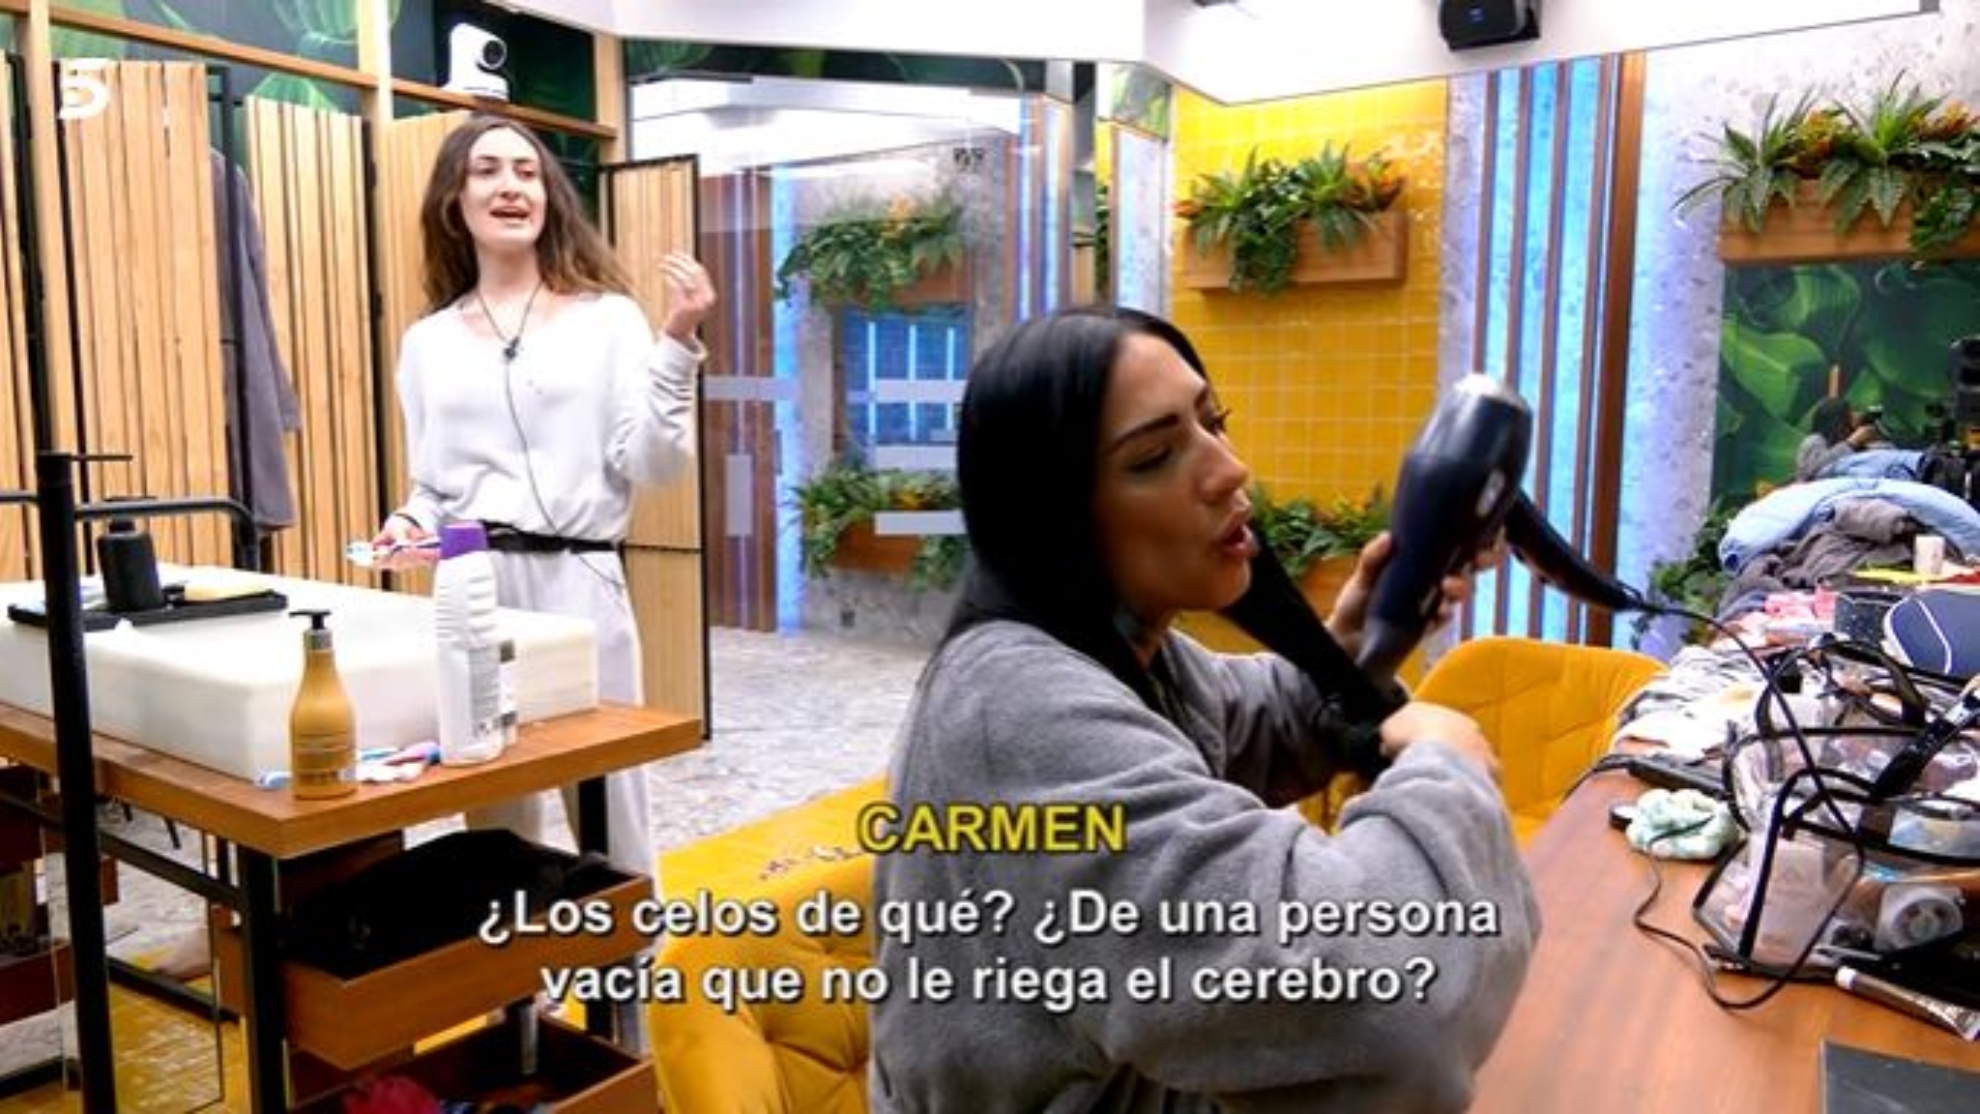 Discusin a gritos entre Carmen y Laila en 'Secret Story': "Chusma, maleducada..."